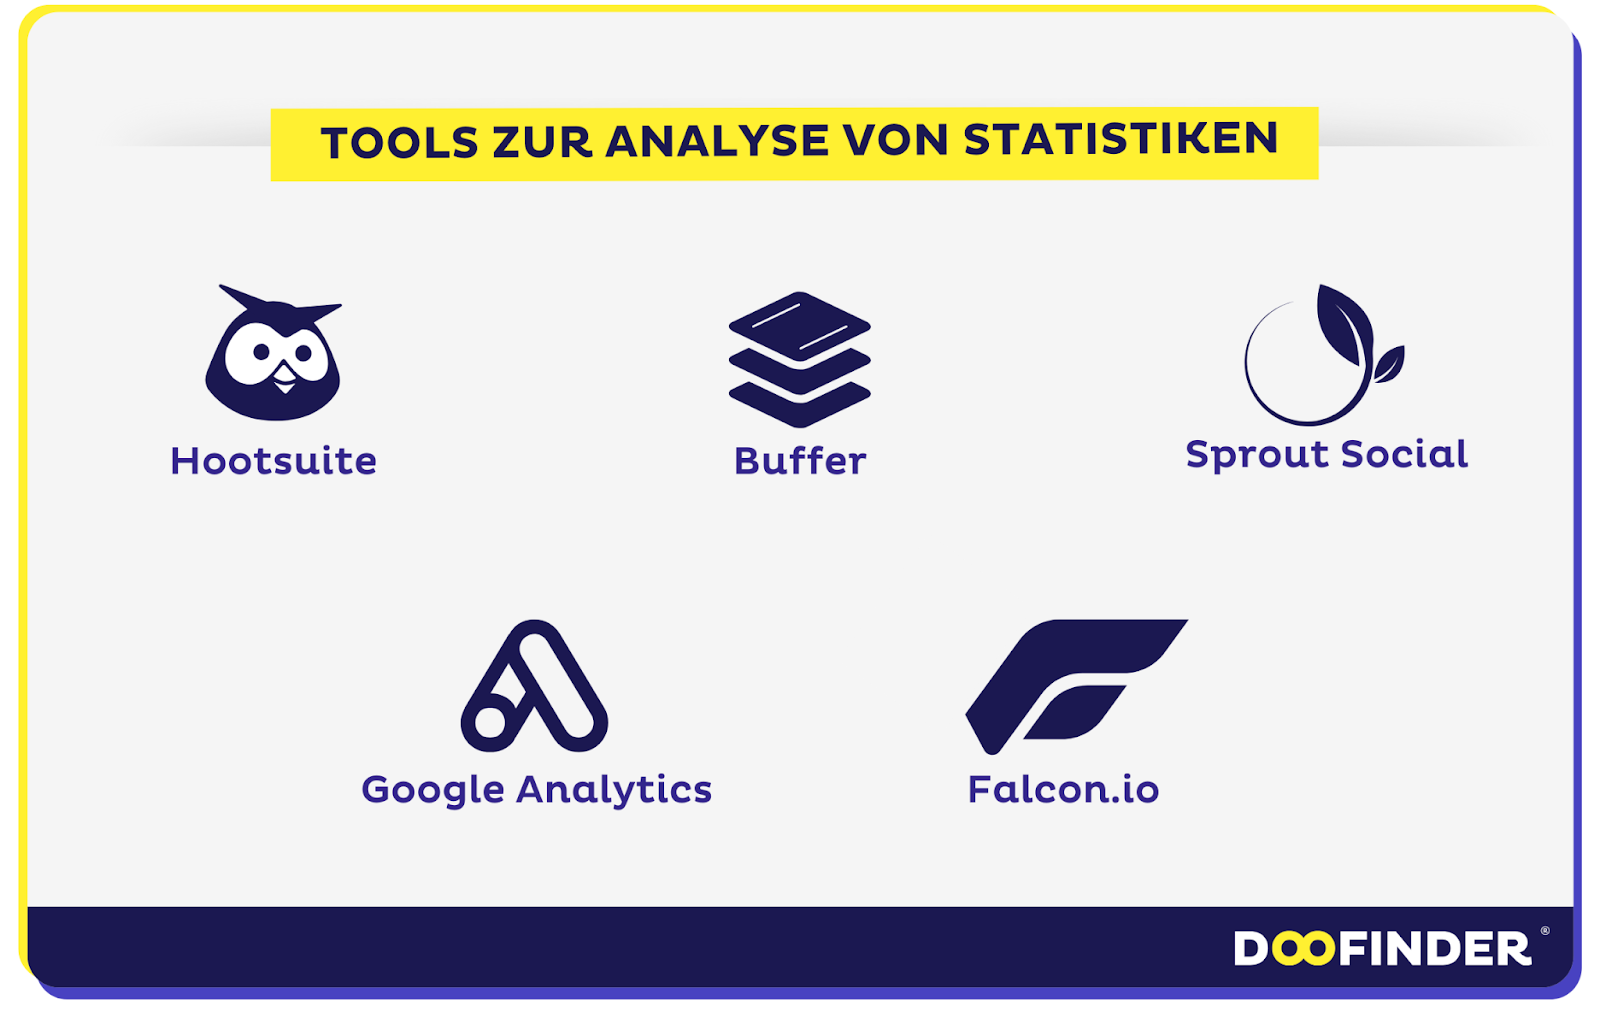 Tools zur Analyse von Social Media Statistiken